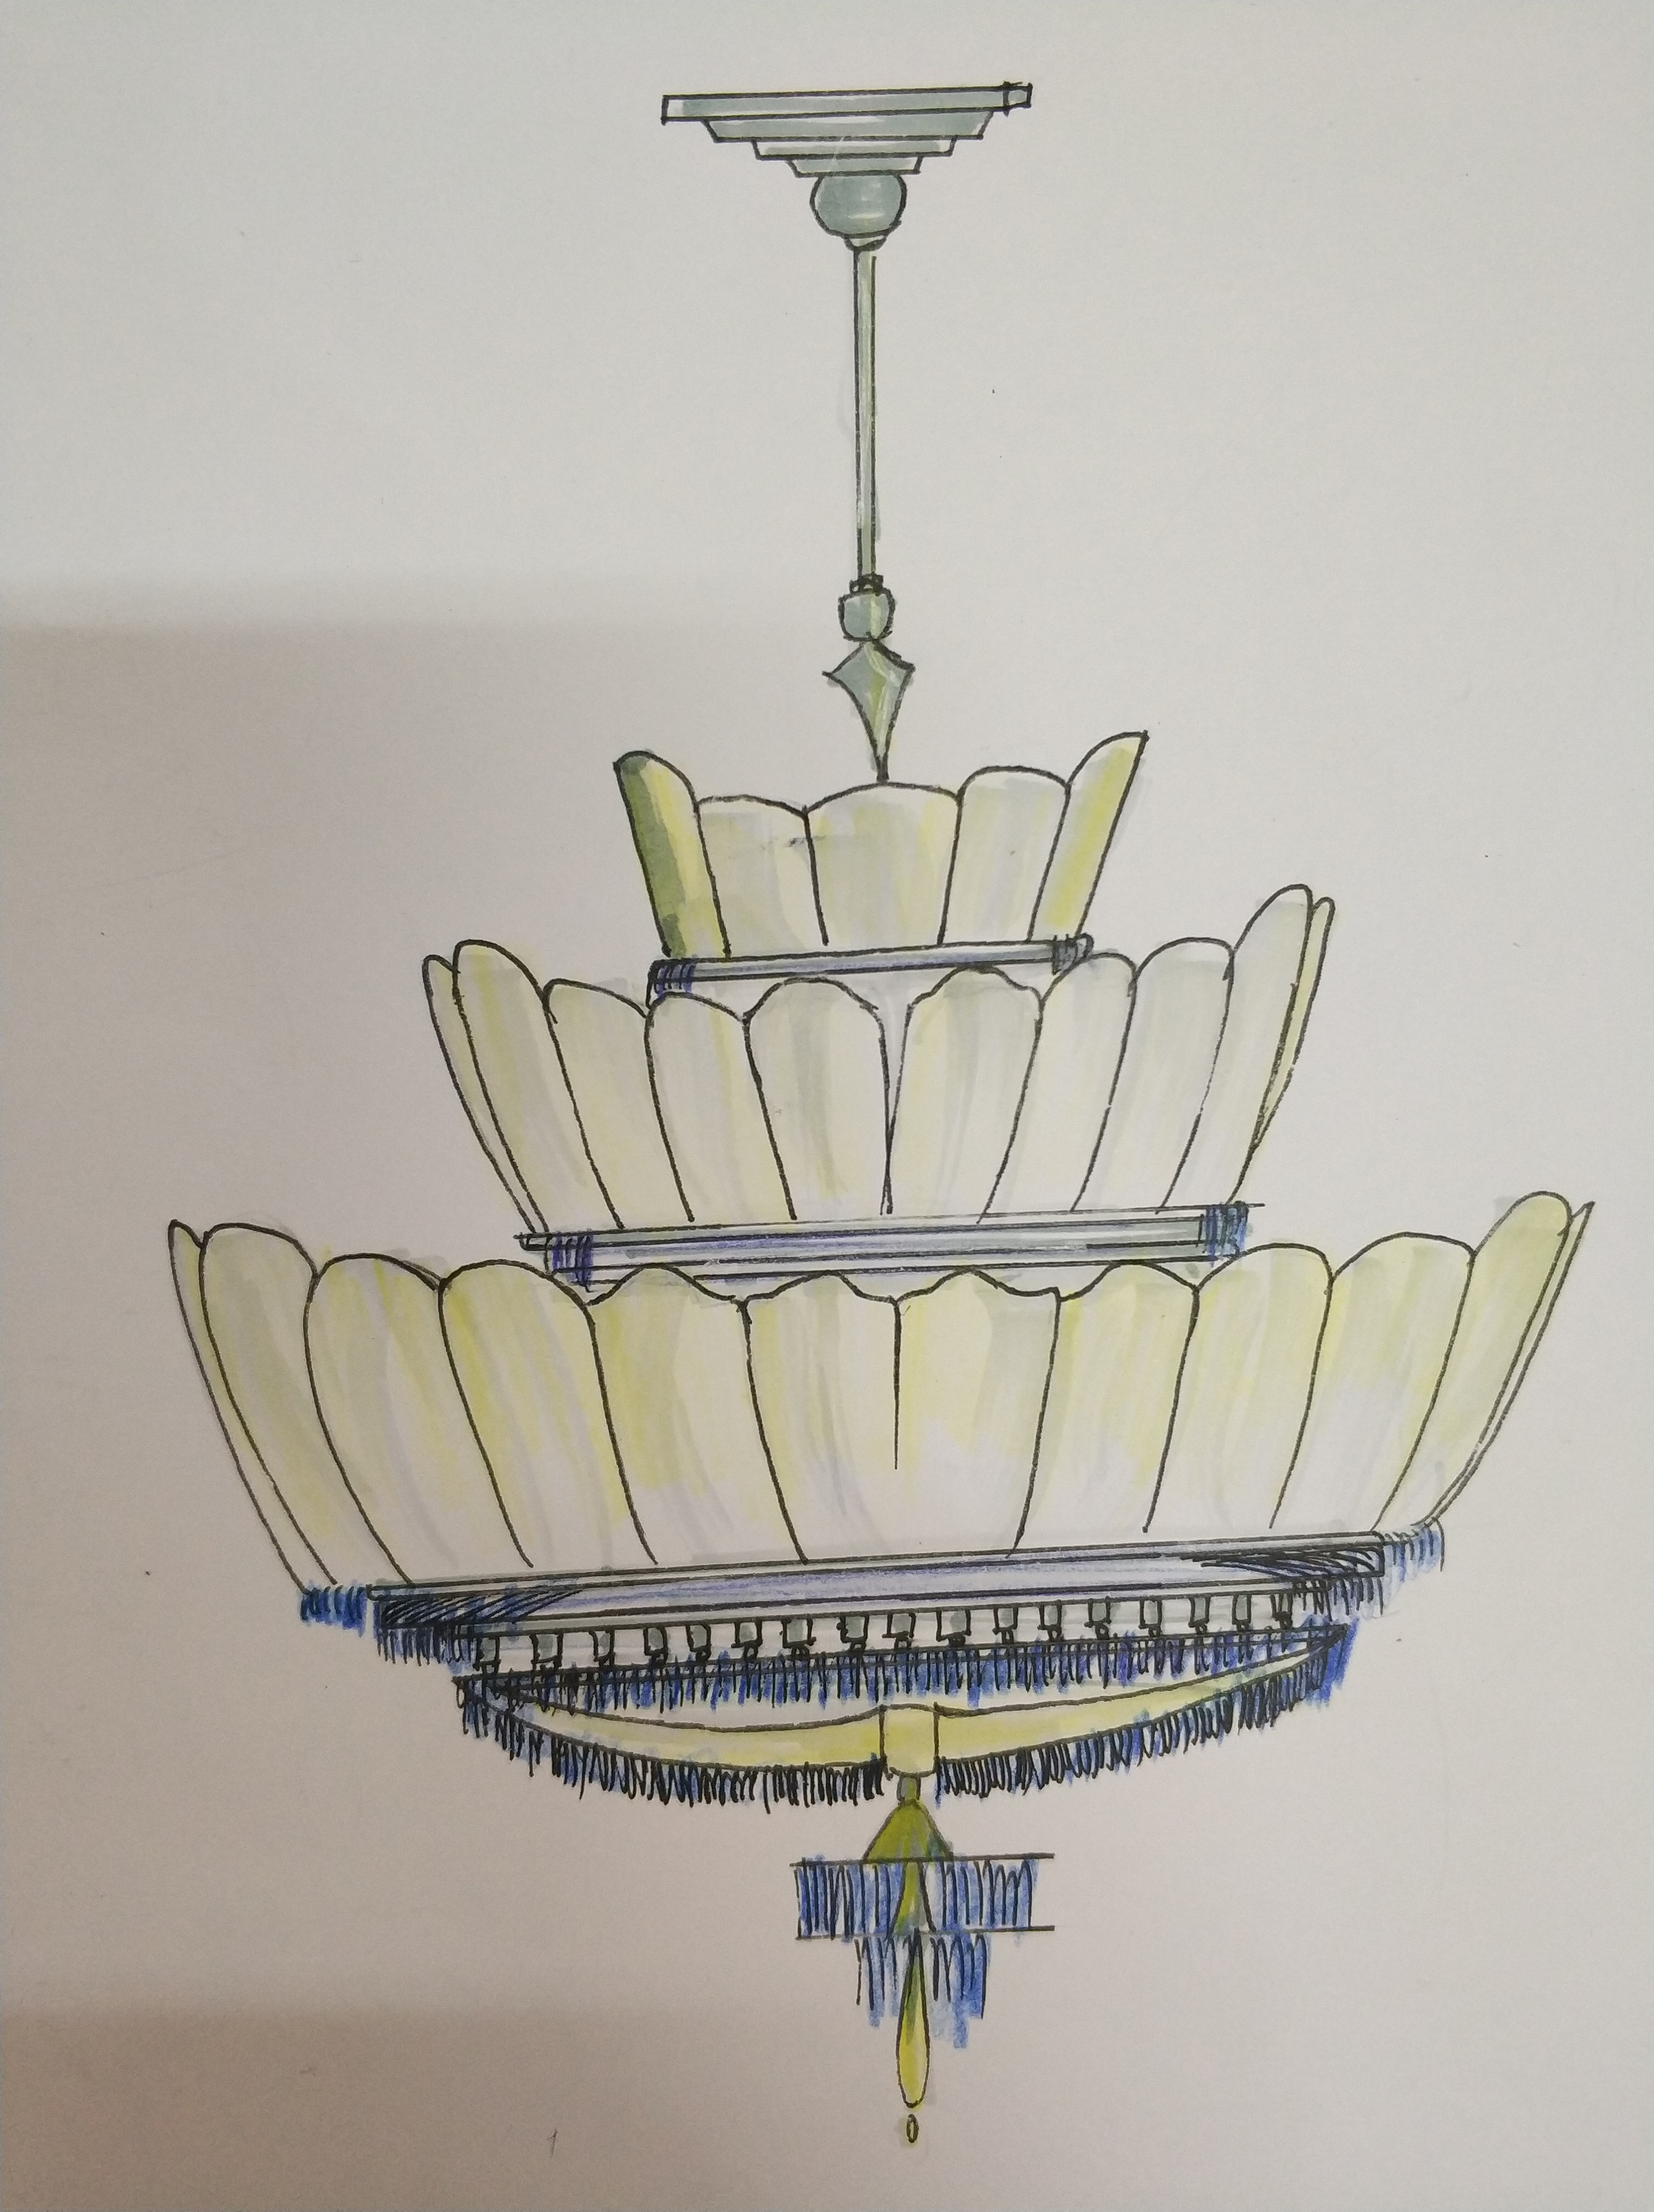 中式灯具手绘马克笔图片